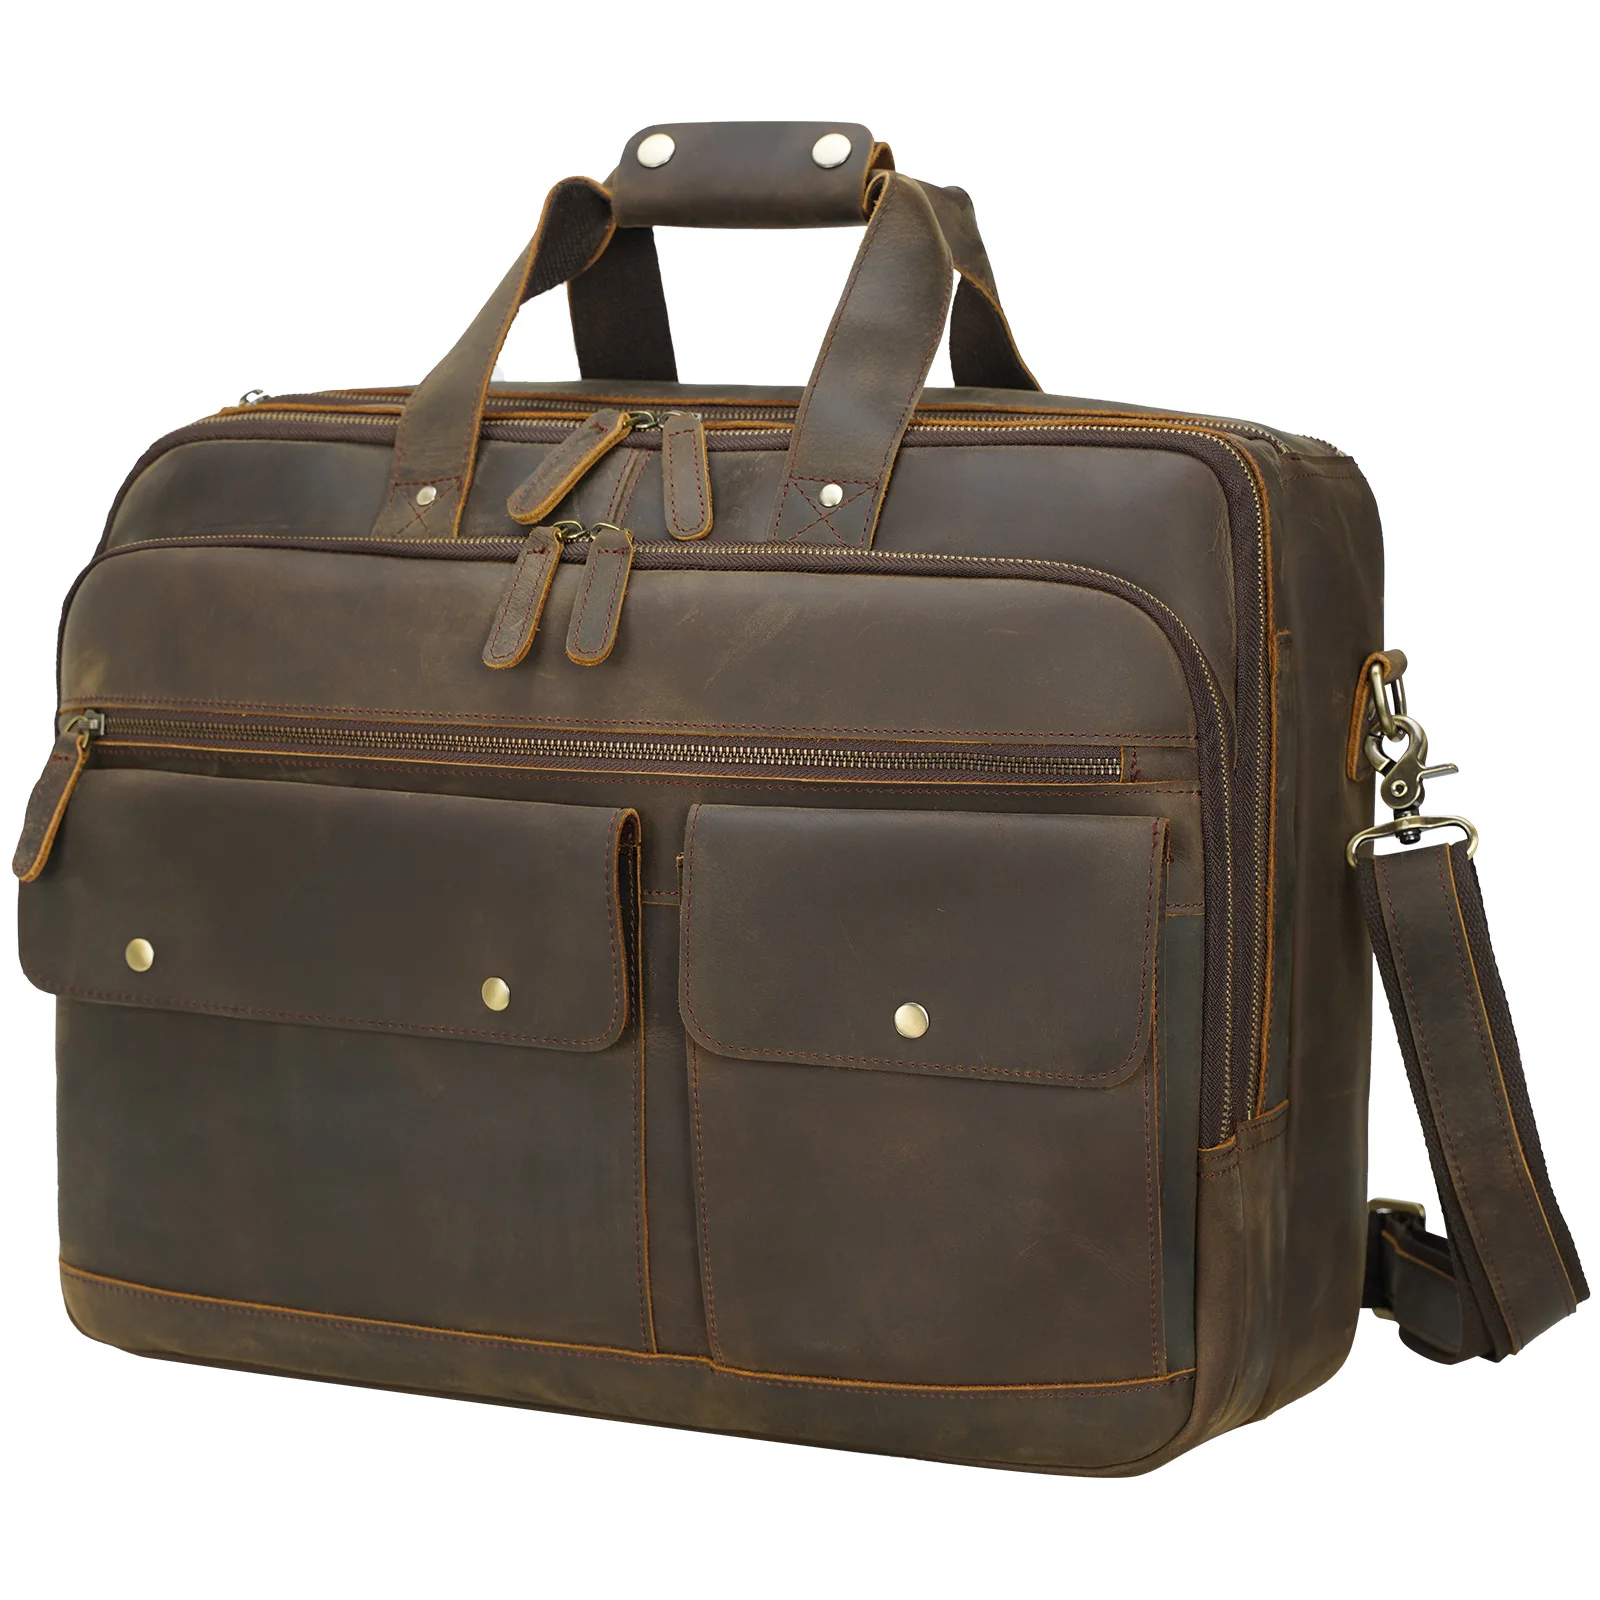 

New Arrival Dropshipping Vintage Crazy Horse Leather 17.3 inch Handmade Full Grain Laptop Shoulder Messenger Bag Briefcase Bag